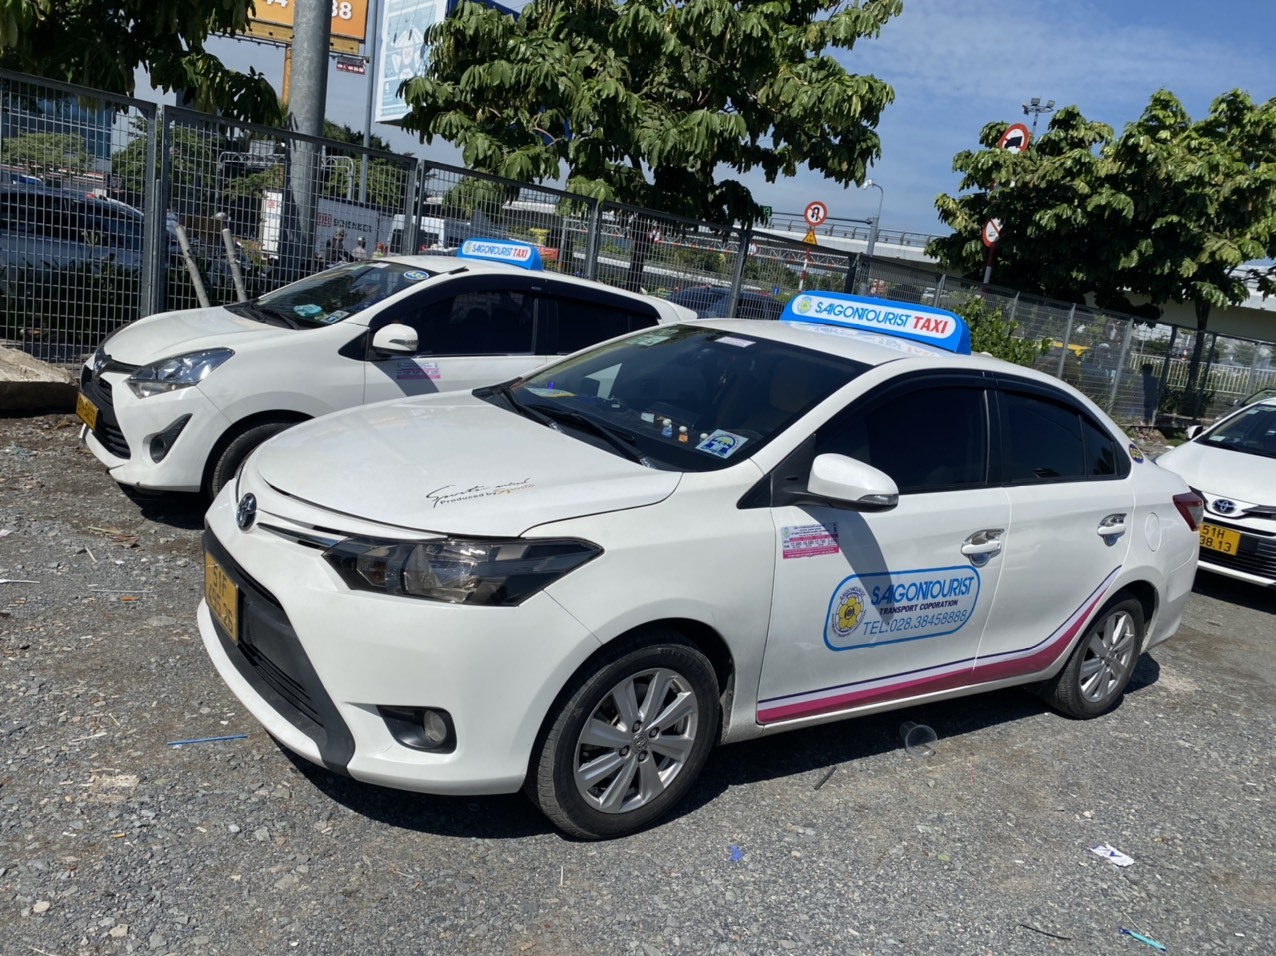 Một xe taxi của Công ty CP vận chuyển Sài Gòn Tourist gian lận giá cước bị cơ quan chức năng kiểm tra, xử phạt. Ảnh: Thanh tra Giao thông TPHCM